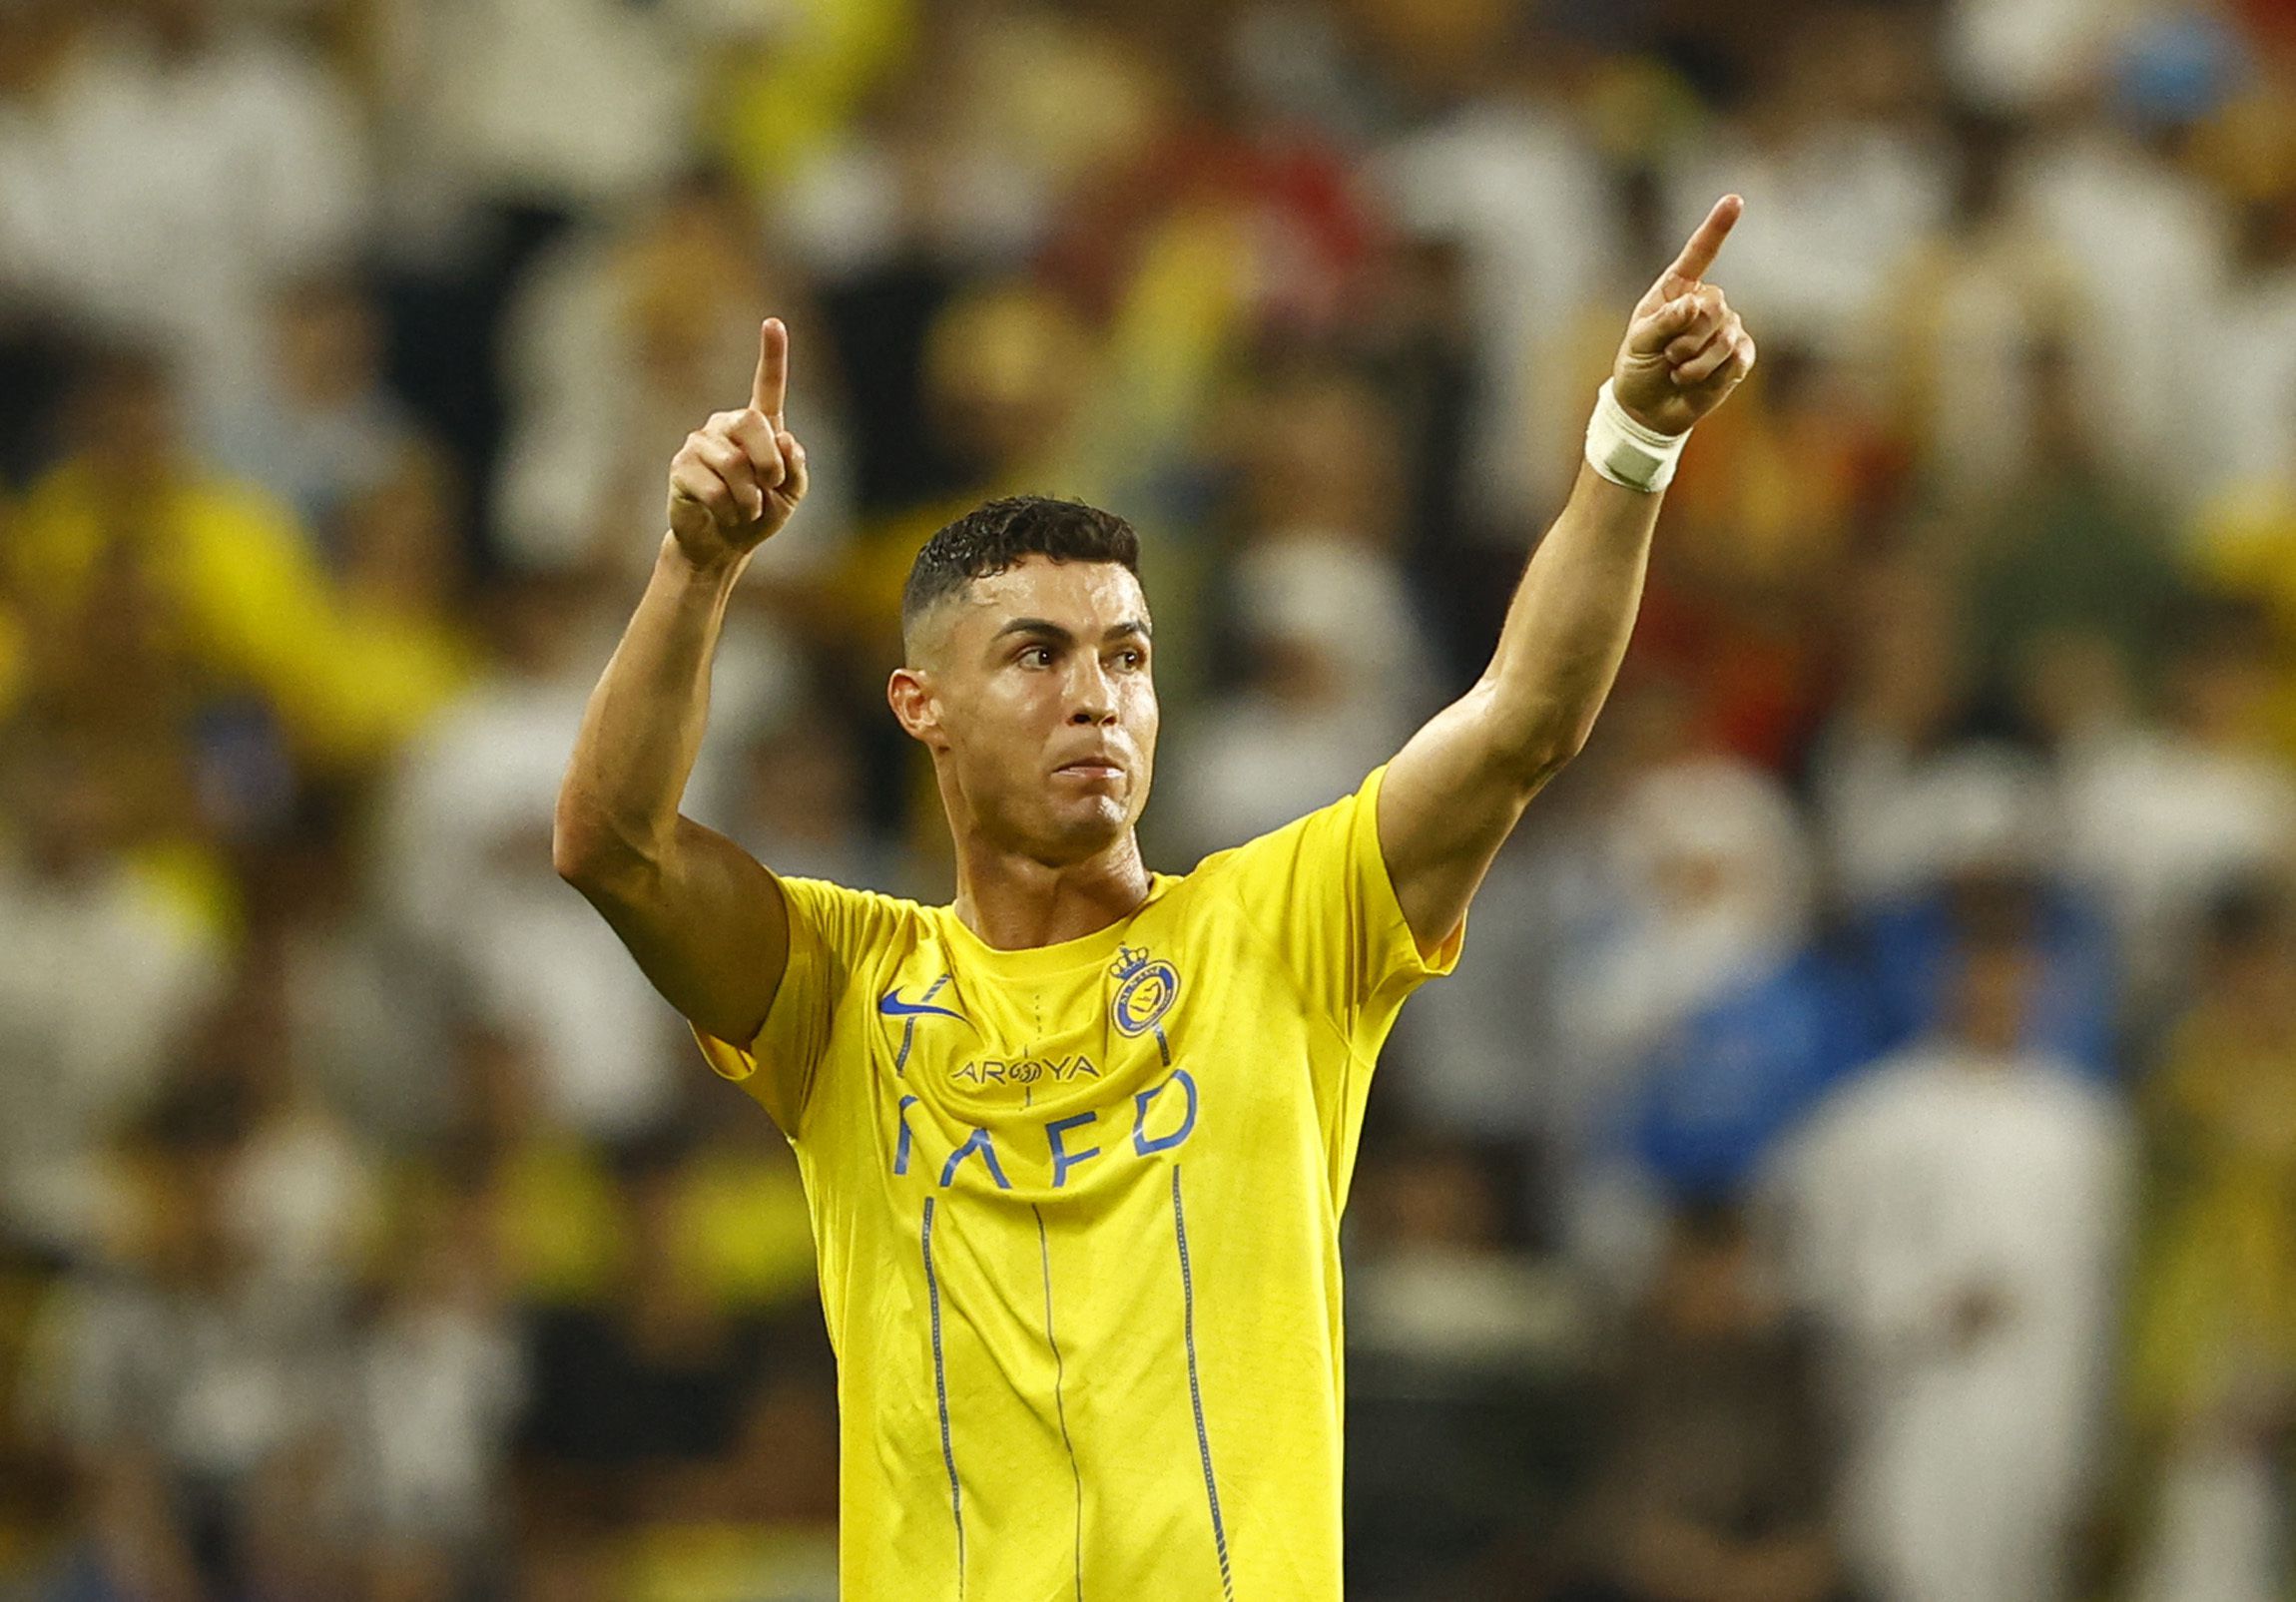 Algunos de los tantos gestos que hizo Cristiano Ronaldo contra el árbitro Mohammed Al Hoaish (REUTERS/Rula Rouhana)